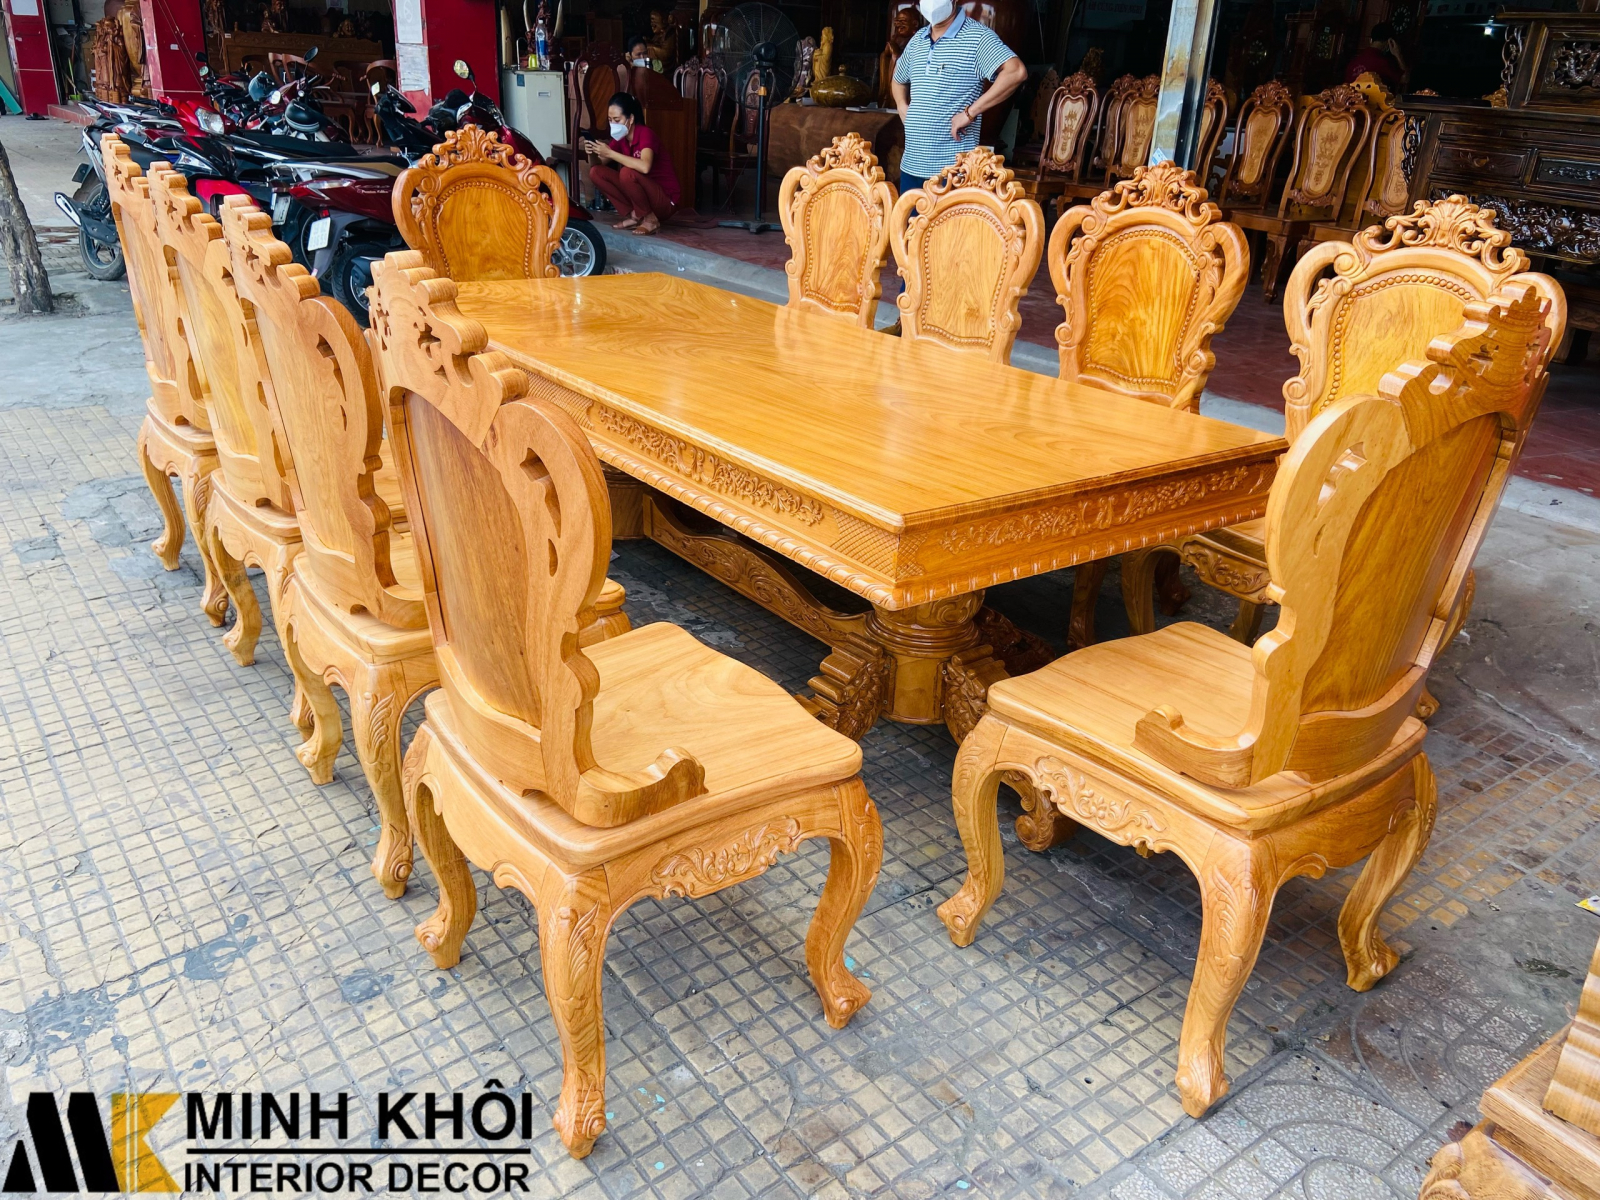 Với màu đỏ tươi sáng, chiếc bàn này chắc chắn sẽ trở thành tâm điểm của căn phòng ăn của bạn. Kiểu dáng cổ điển, tỉ mỉ và độc đáo tạo ra một không gian ấn tượng và đẳng cấp. Hãy xem hình ảnh để khám phá sự độc đáo của bàn ăn hoàng gia gỗ gõ đỏ.